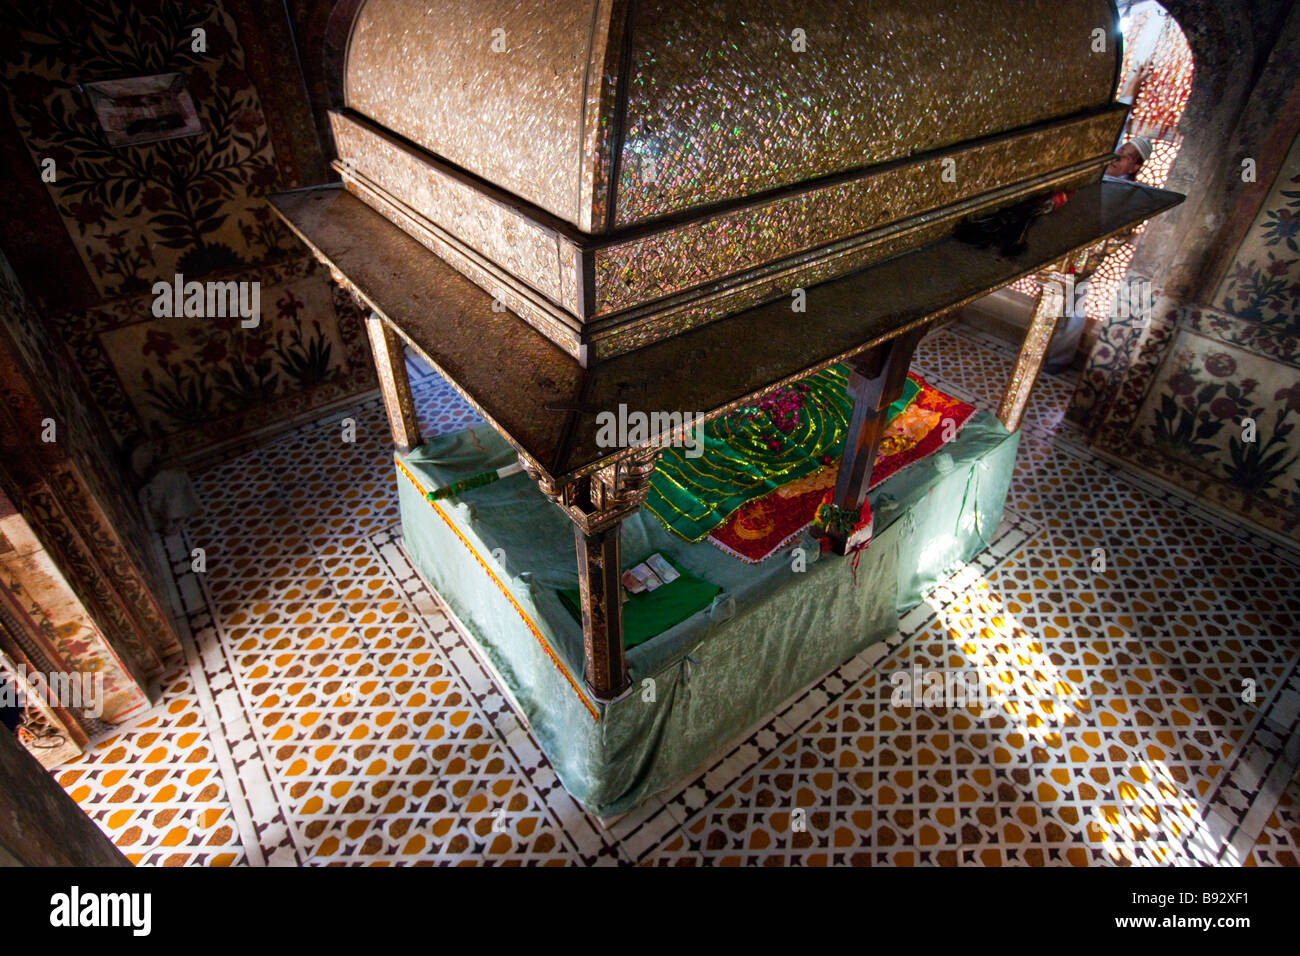 À l'intérieur de cheikh Salim Chishti tombe à l'intérieur de la mosquée de vendredi à Fatehpur Sikri Inde Banque D'Images